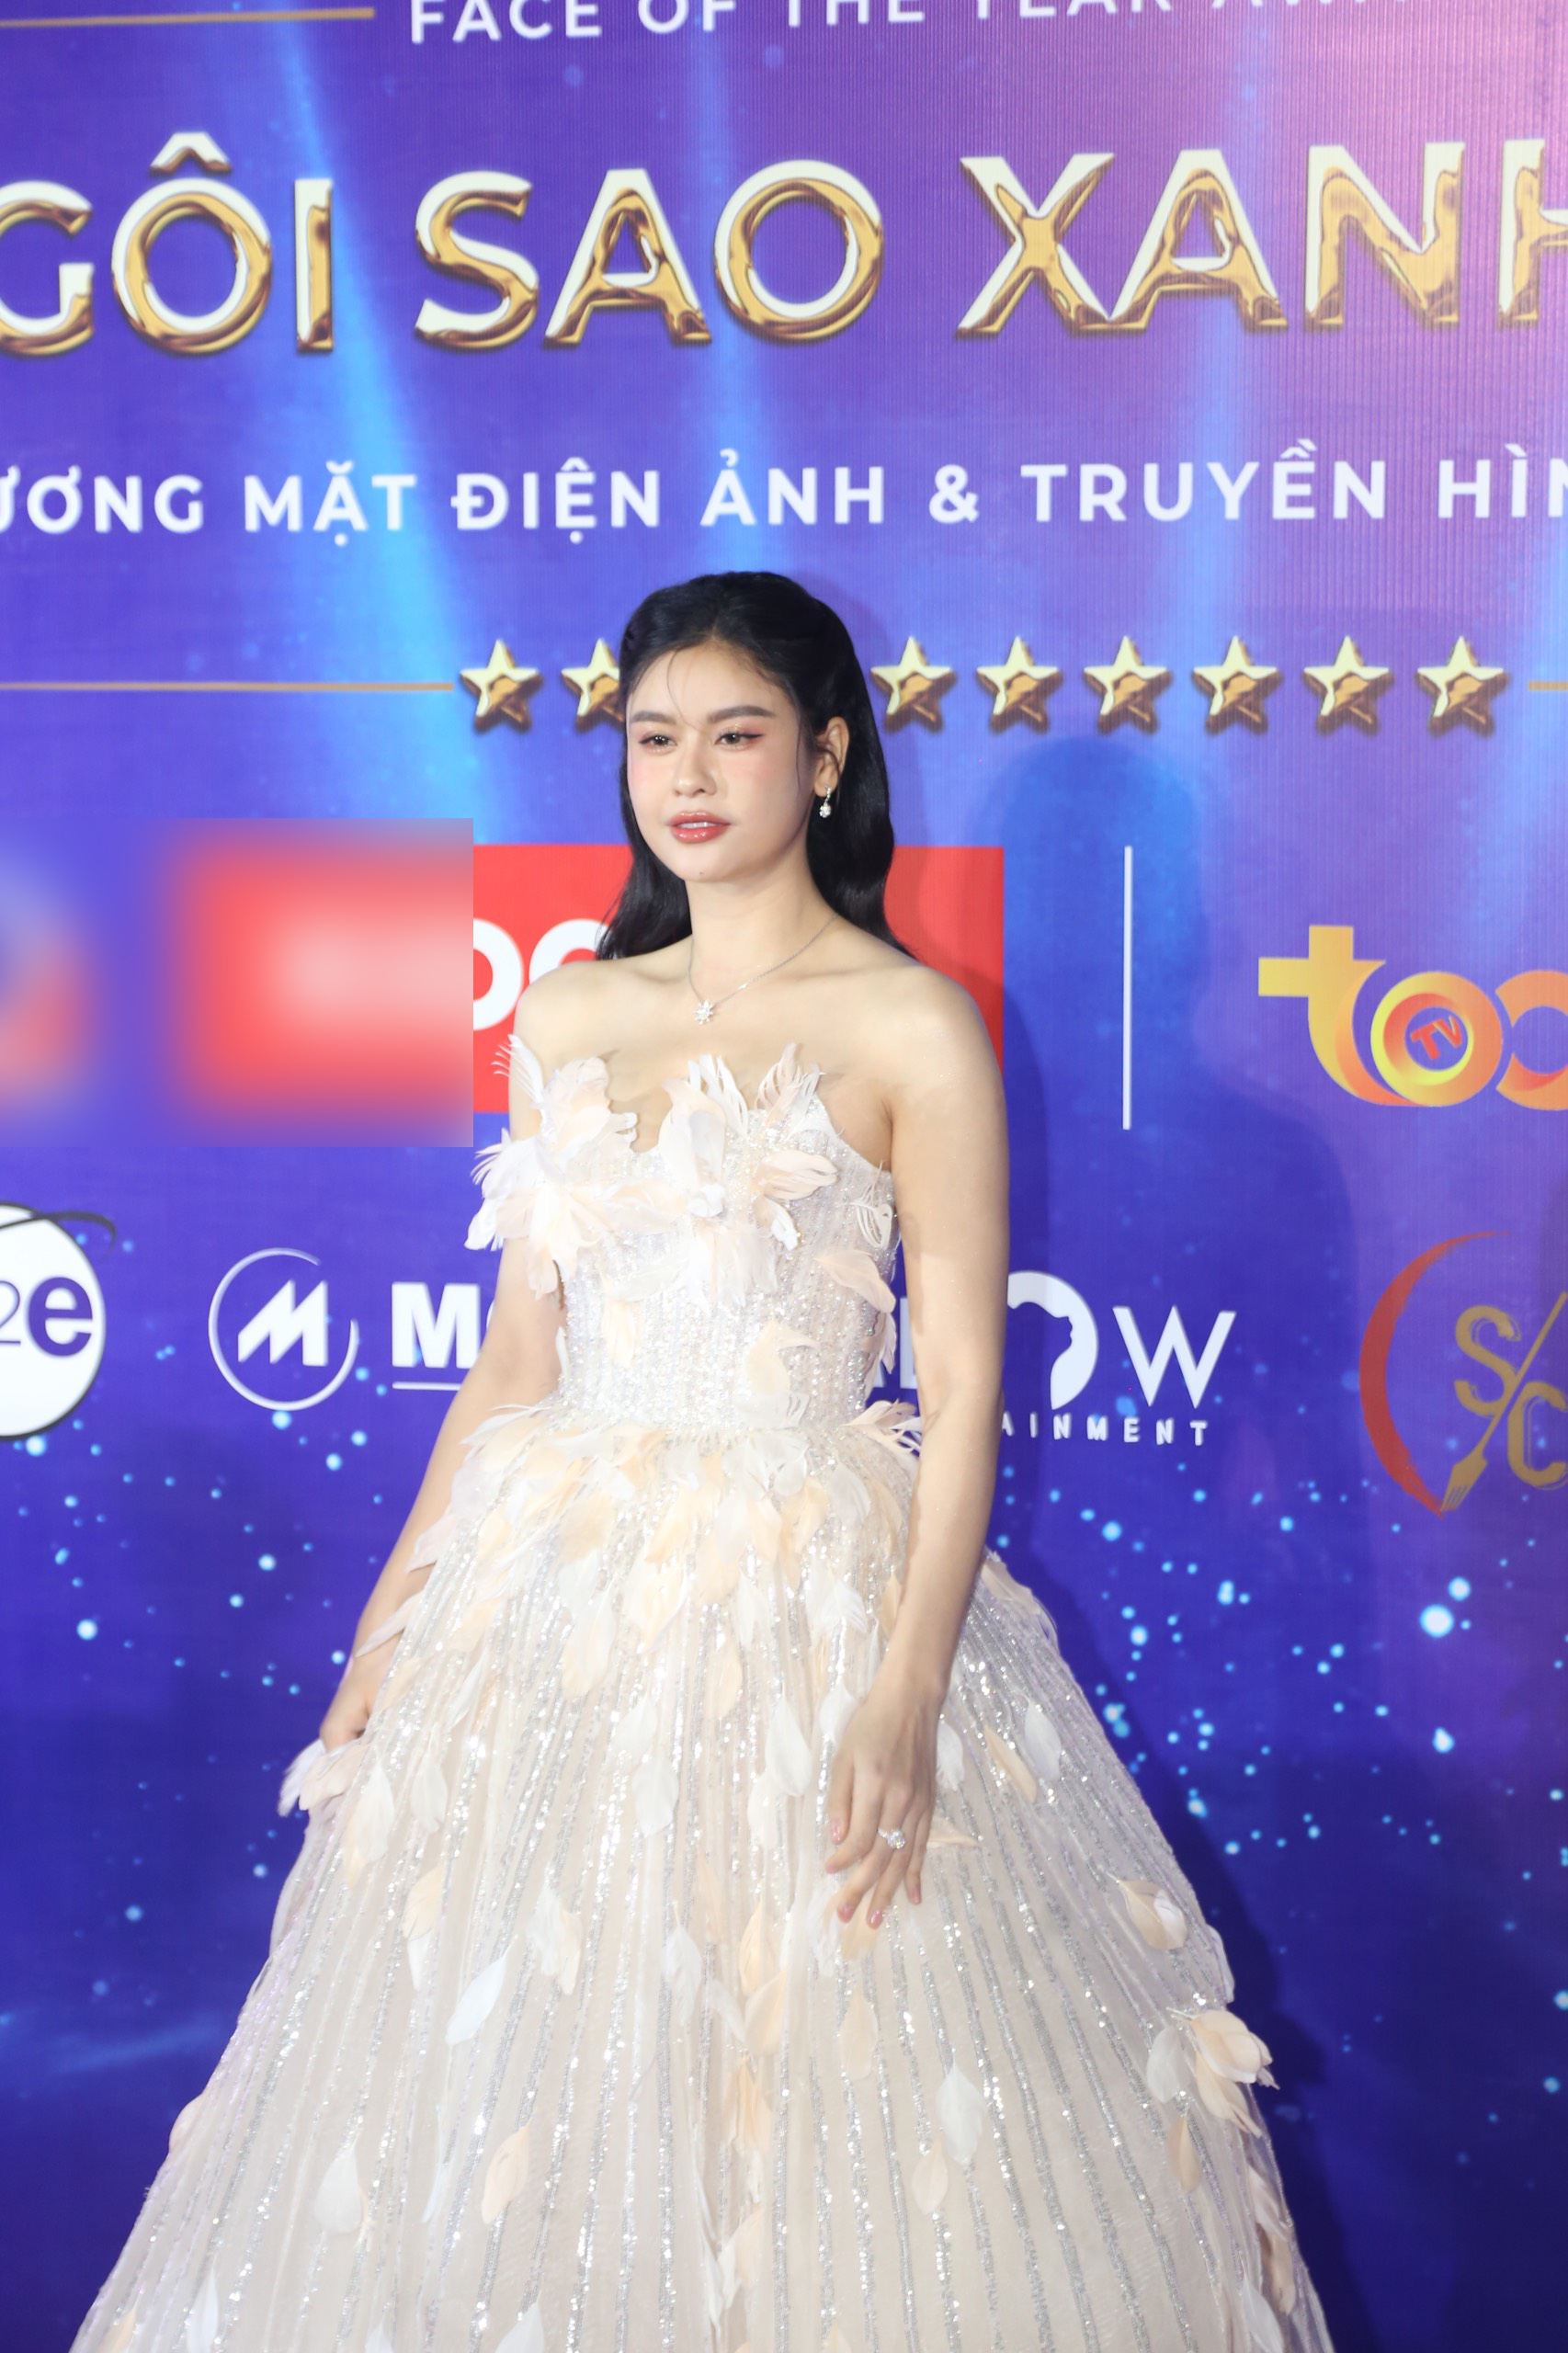 DJ Mie khoe nhan sắc như Hoa hậu, vợ một nam ca sĩ nổi tiếng lộ gương mặt khác lạ trên thảm đỏ - ảnh 8